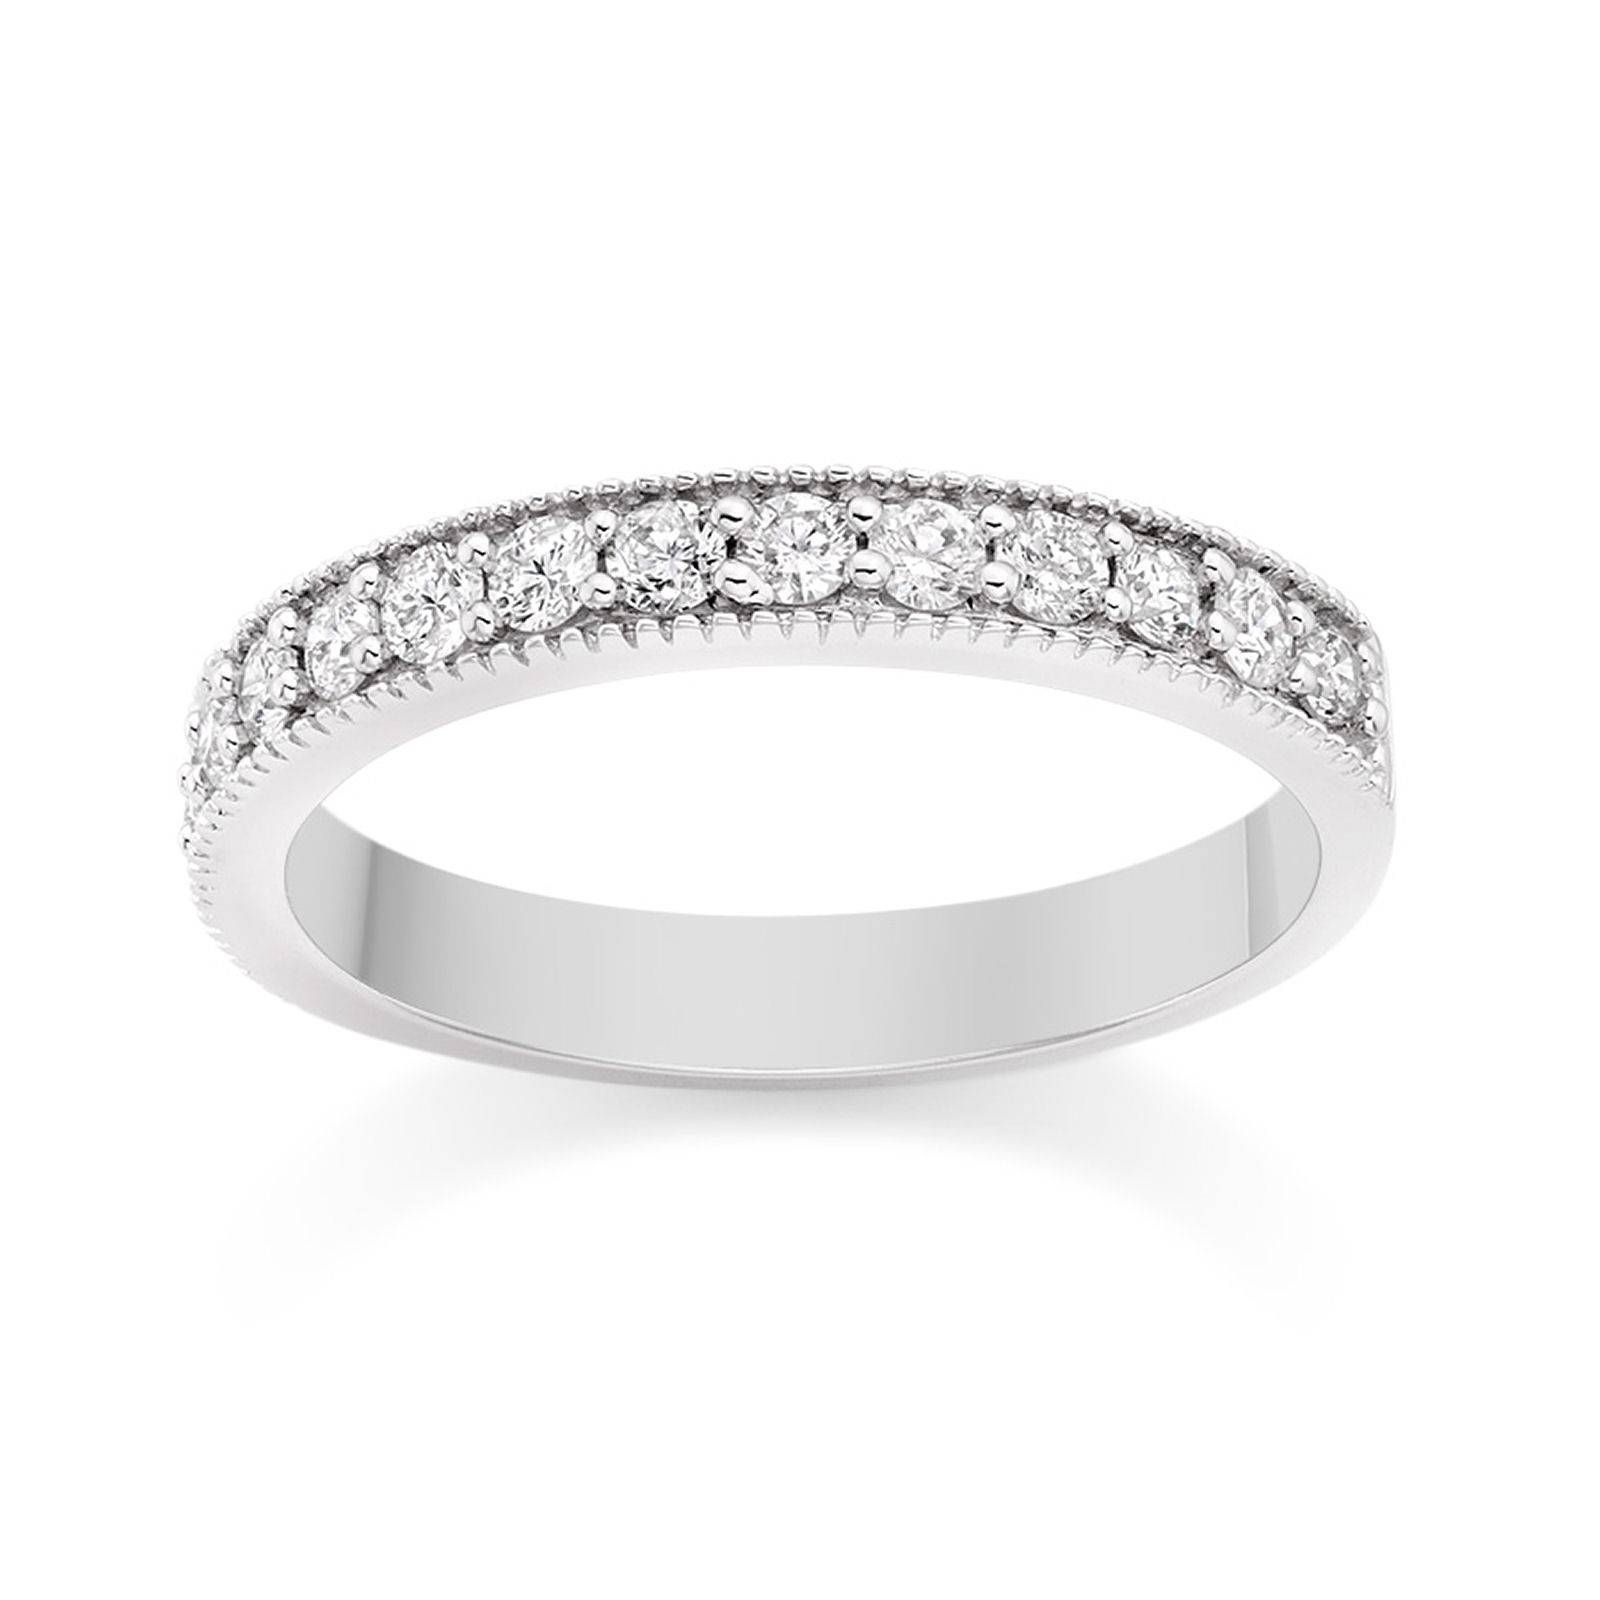 Milgrain Diamond Wedding Ring In Platinum Wedding Dress From With Wedding Rings With Platinum Diamond (View 7 of 15)